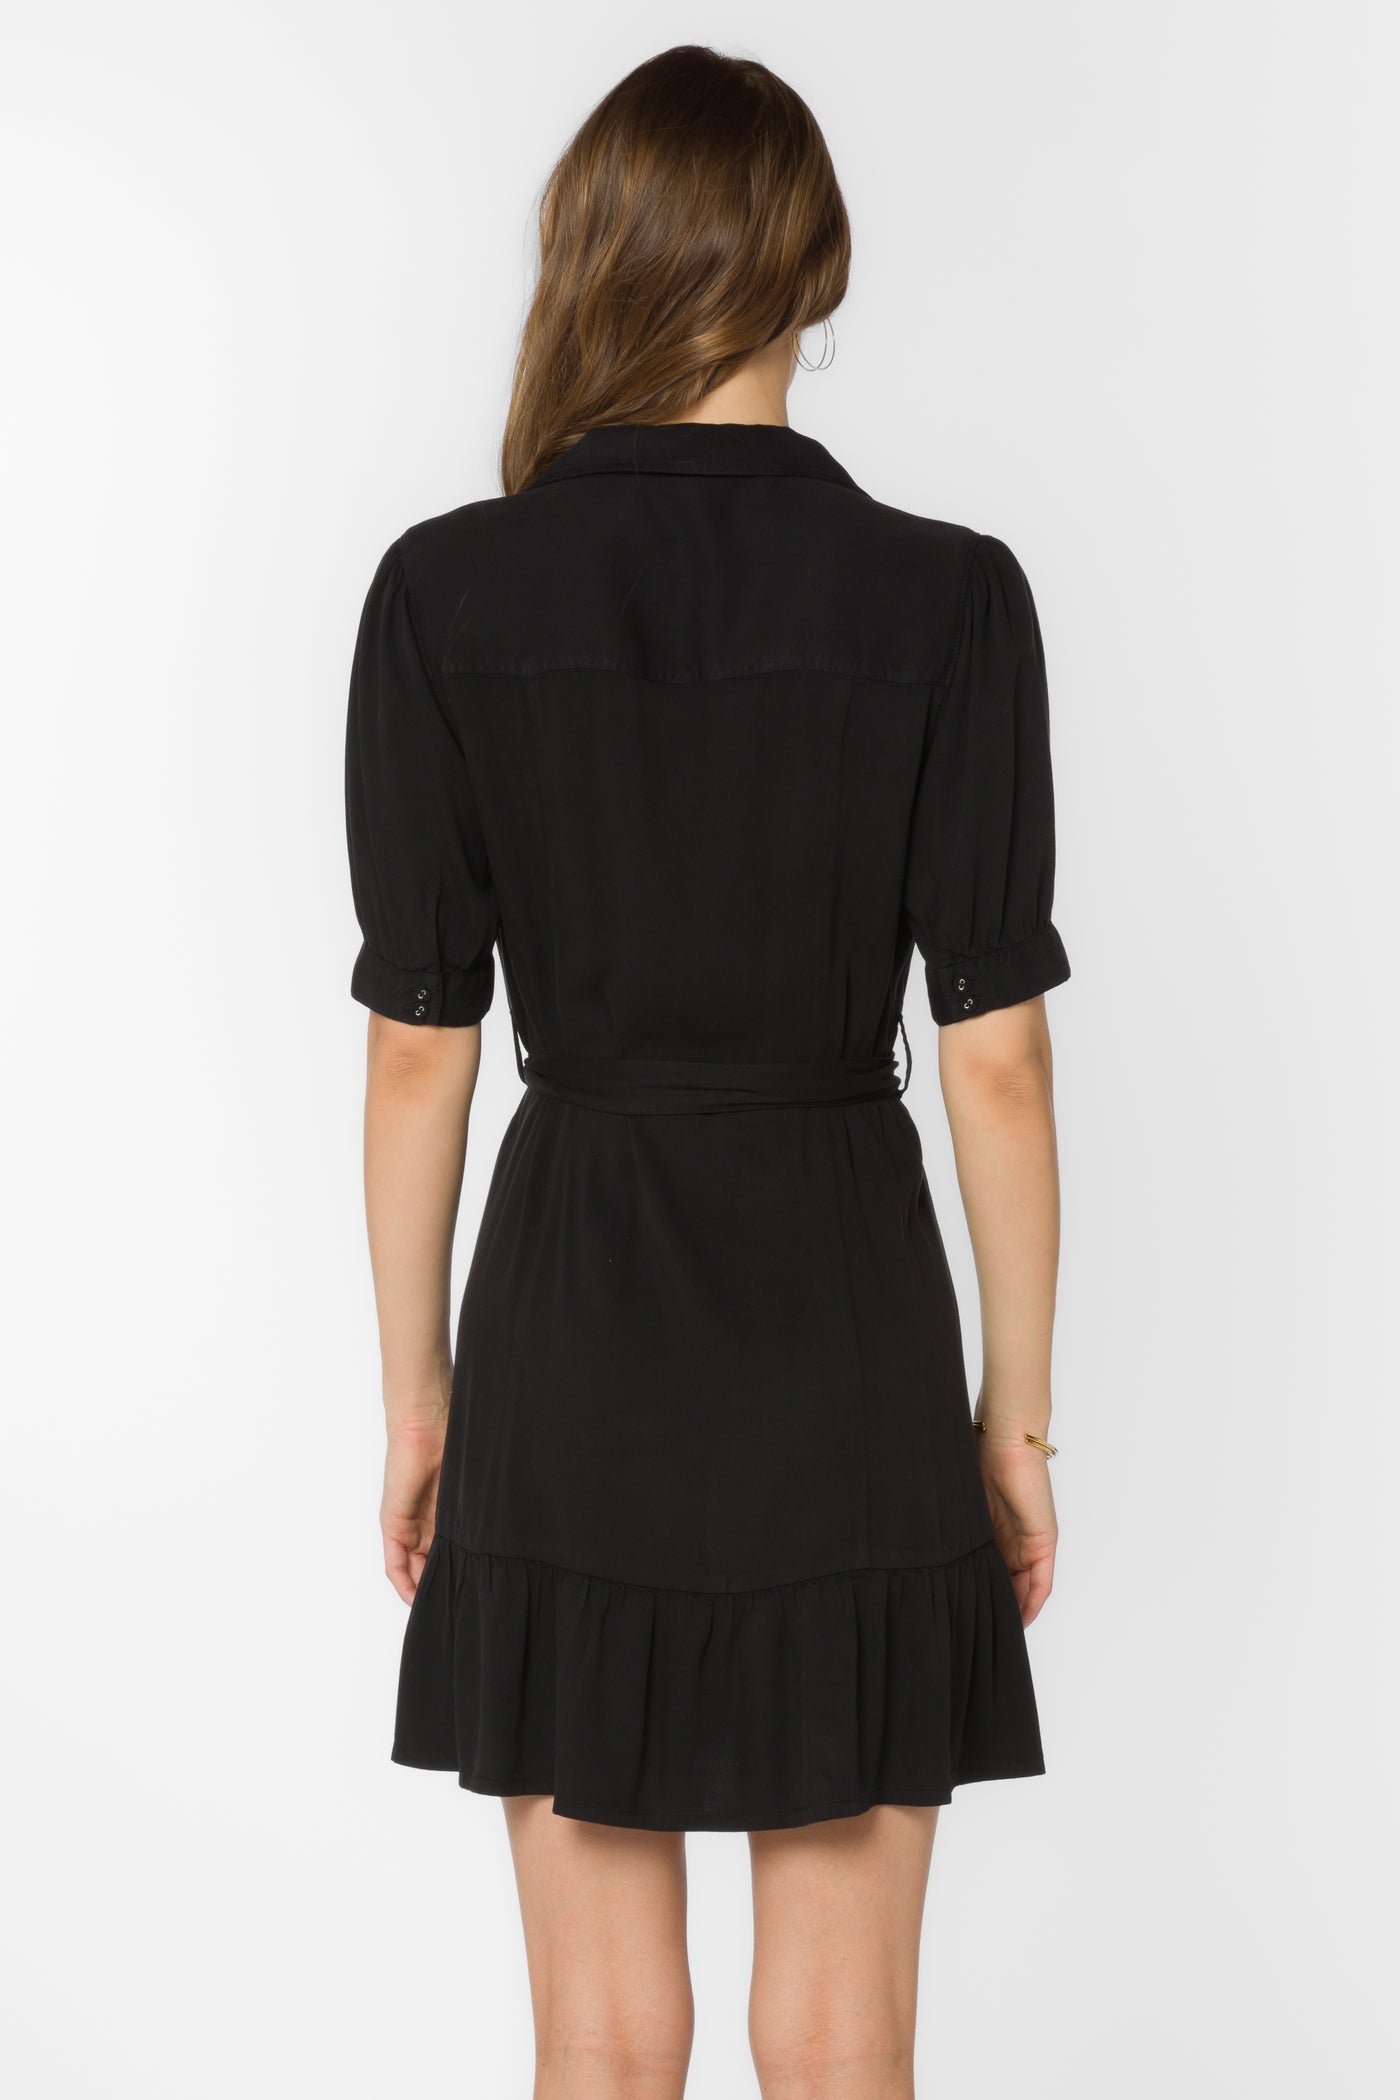 Belva Black Dress - Dresses - Velvet Heart Clothing